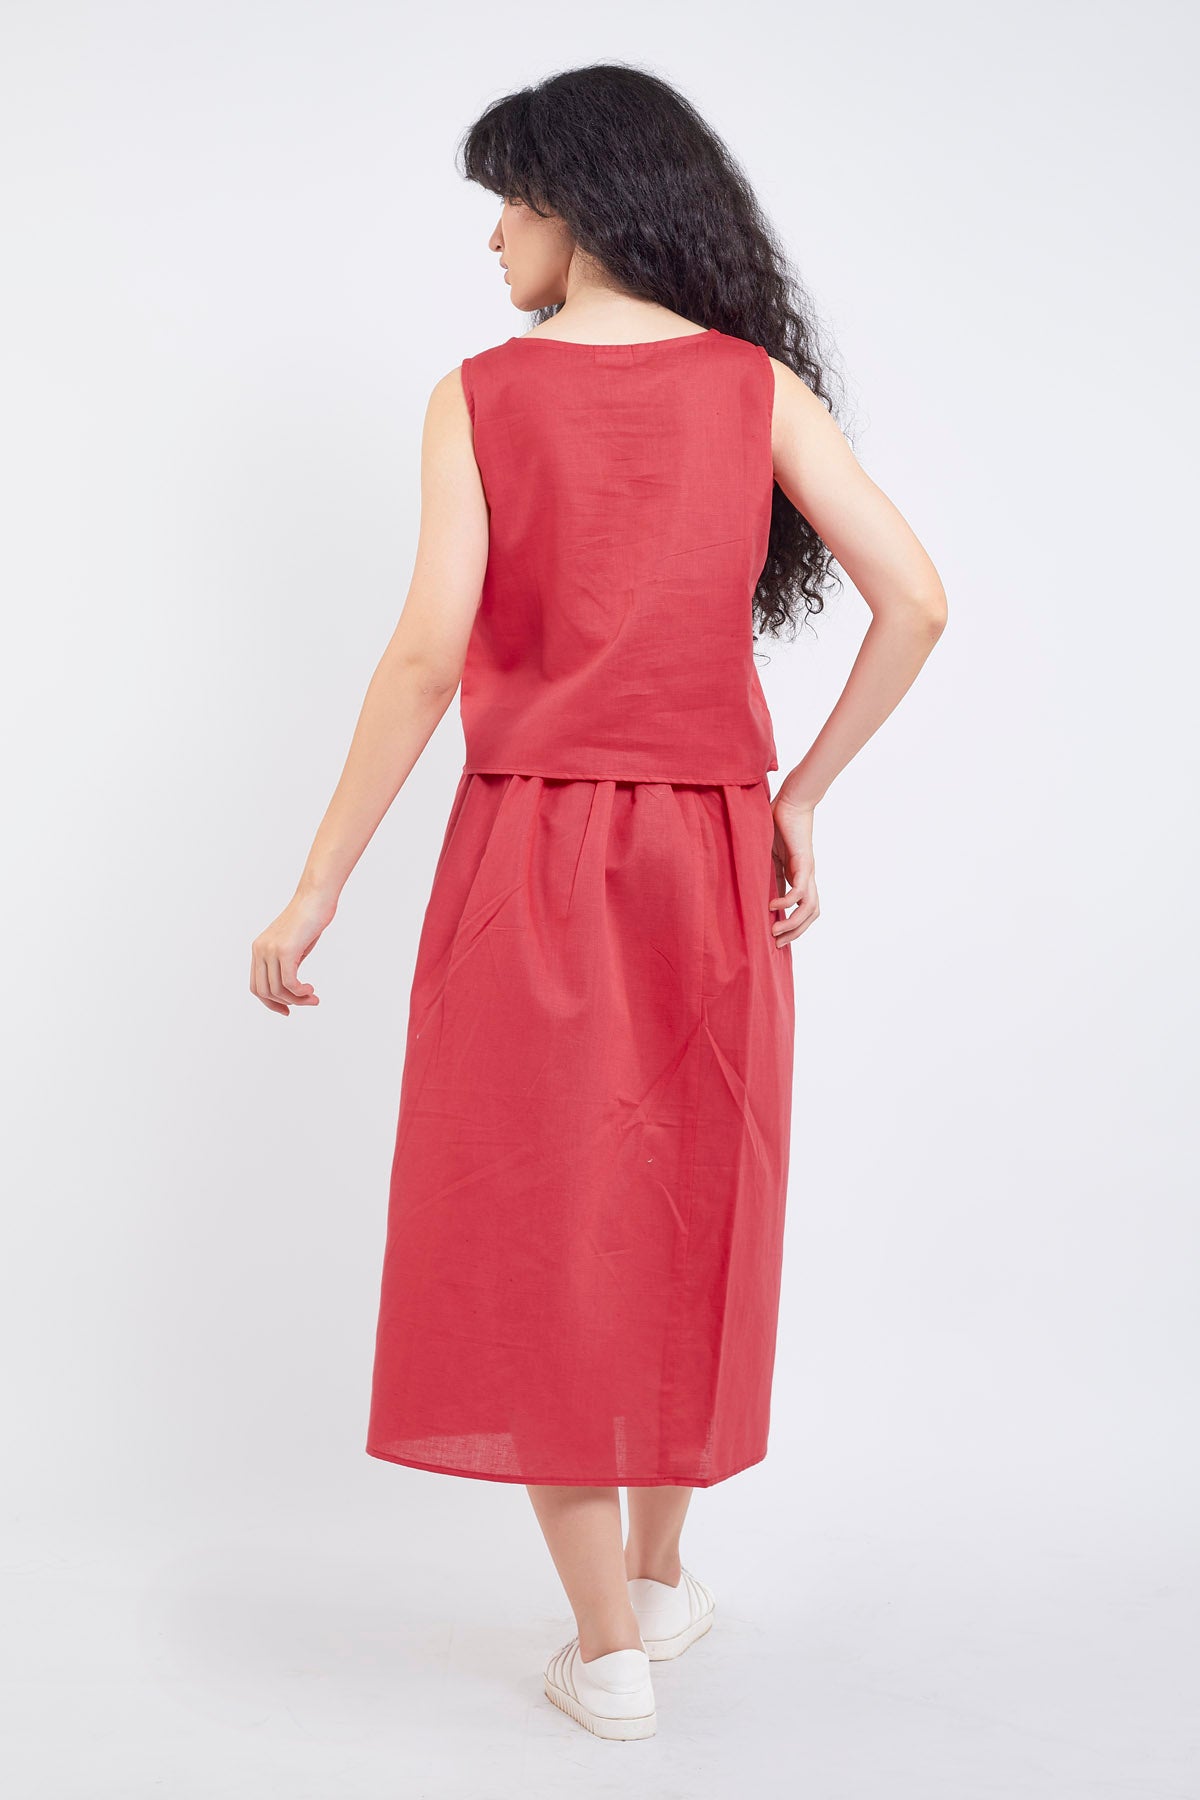 Red Cotton Linen Skirt Set